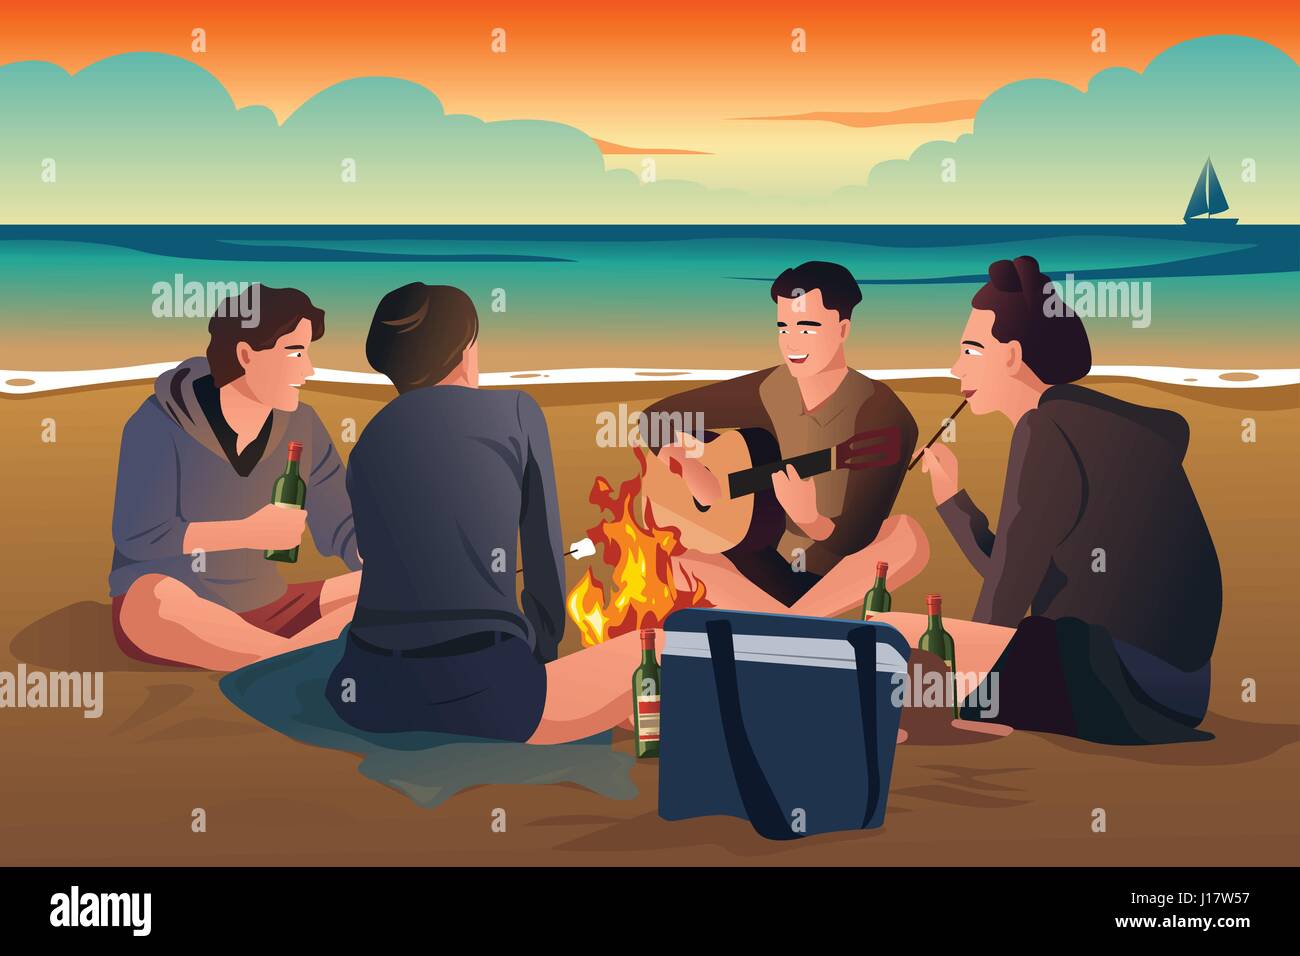 Eine Vektor-Illustration der glückliche junge Menschen Spaß am Strand Stock Vektor